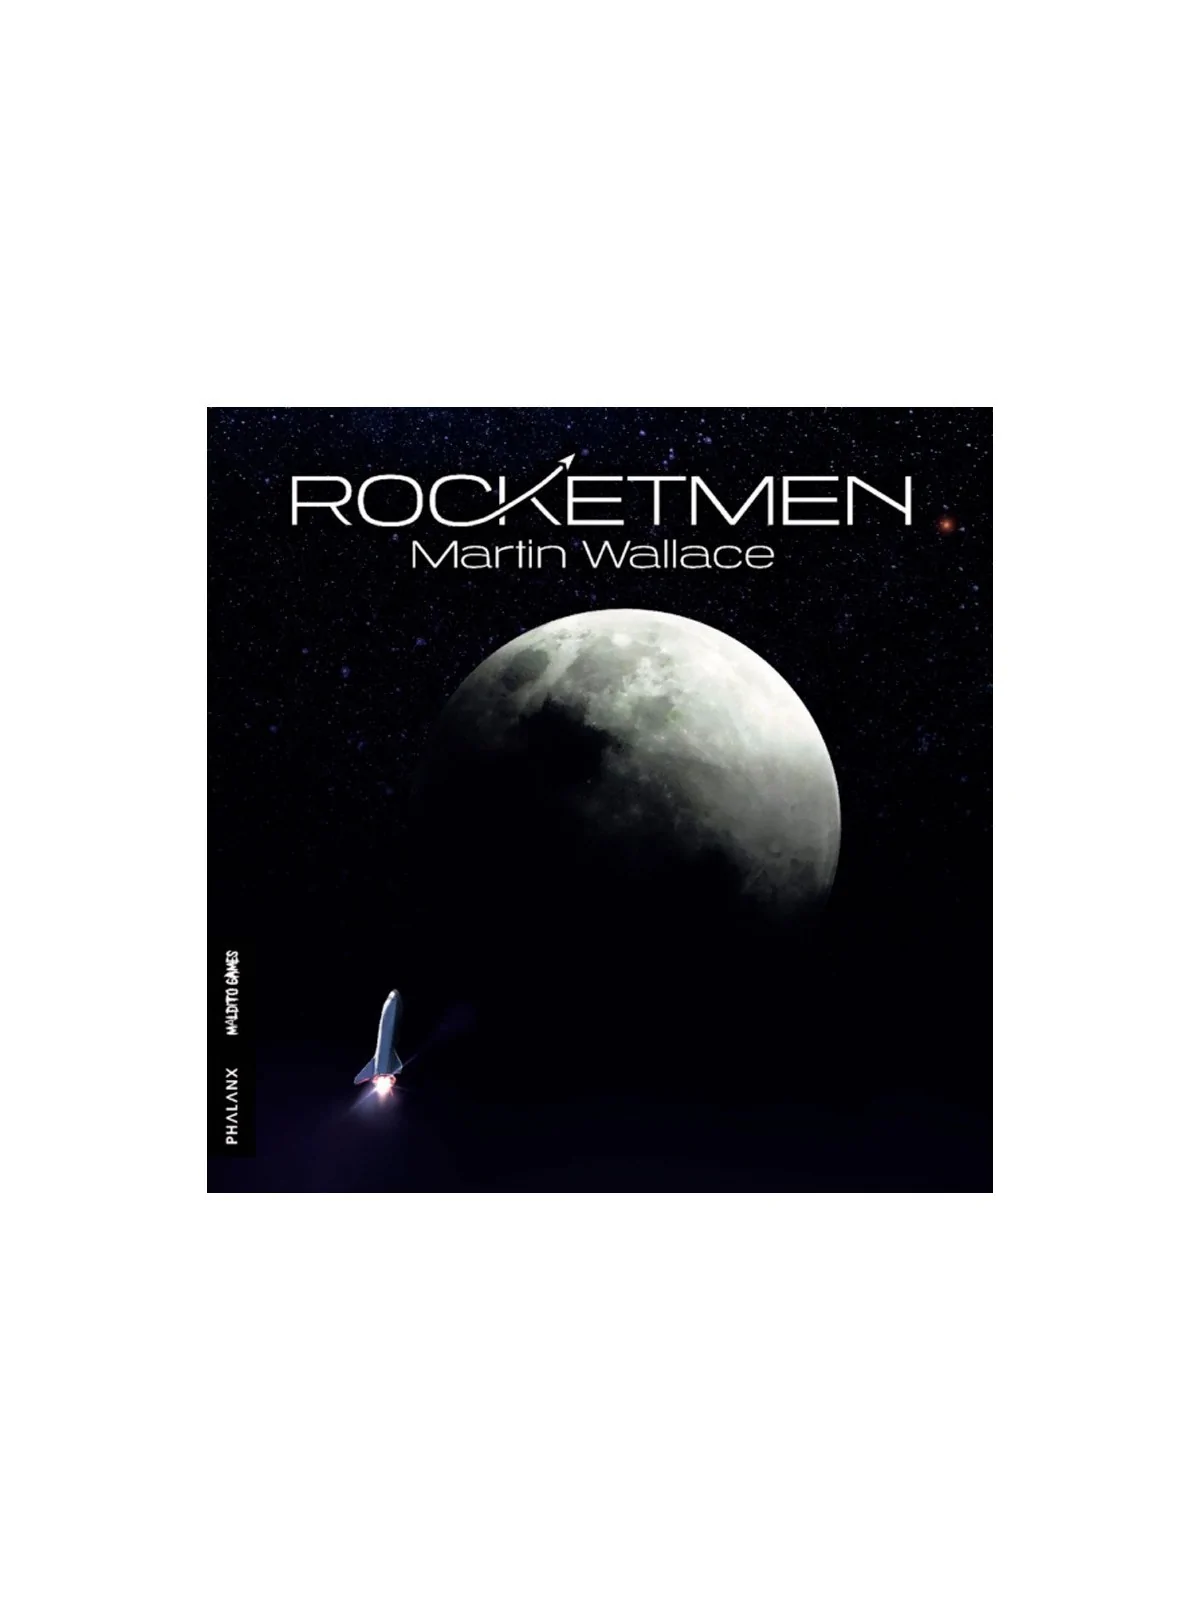 Comprar Rocketmen barato al mejor precio 31,50 € de Maldito Games